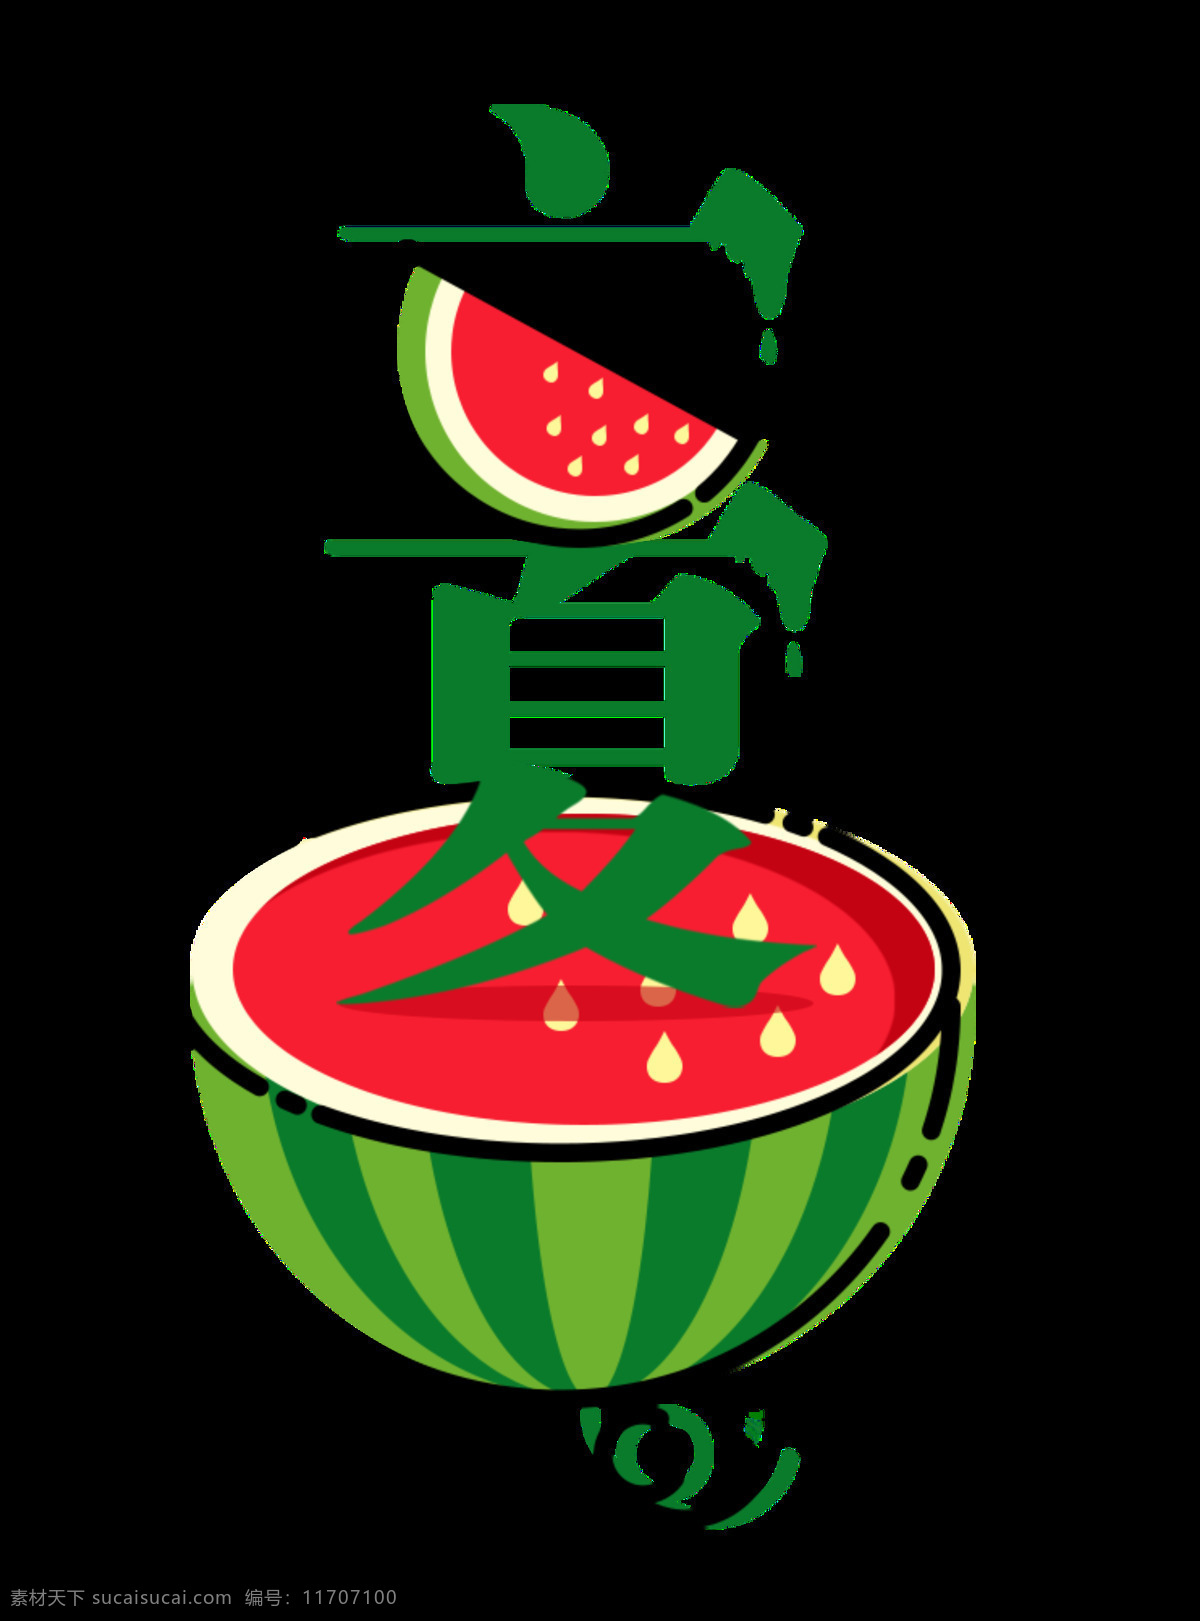 清新 可口 西瓜 立夏 节气 元素 二十四节气 节日元素 夏季 食物 节气元素 绿色字体 水果